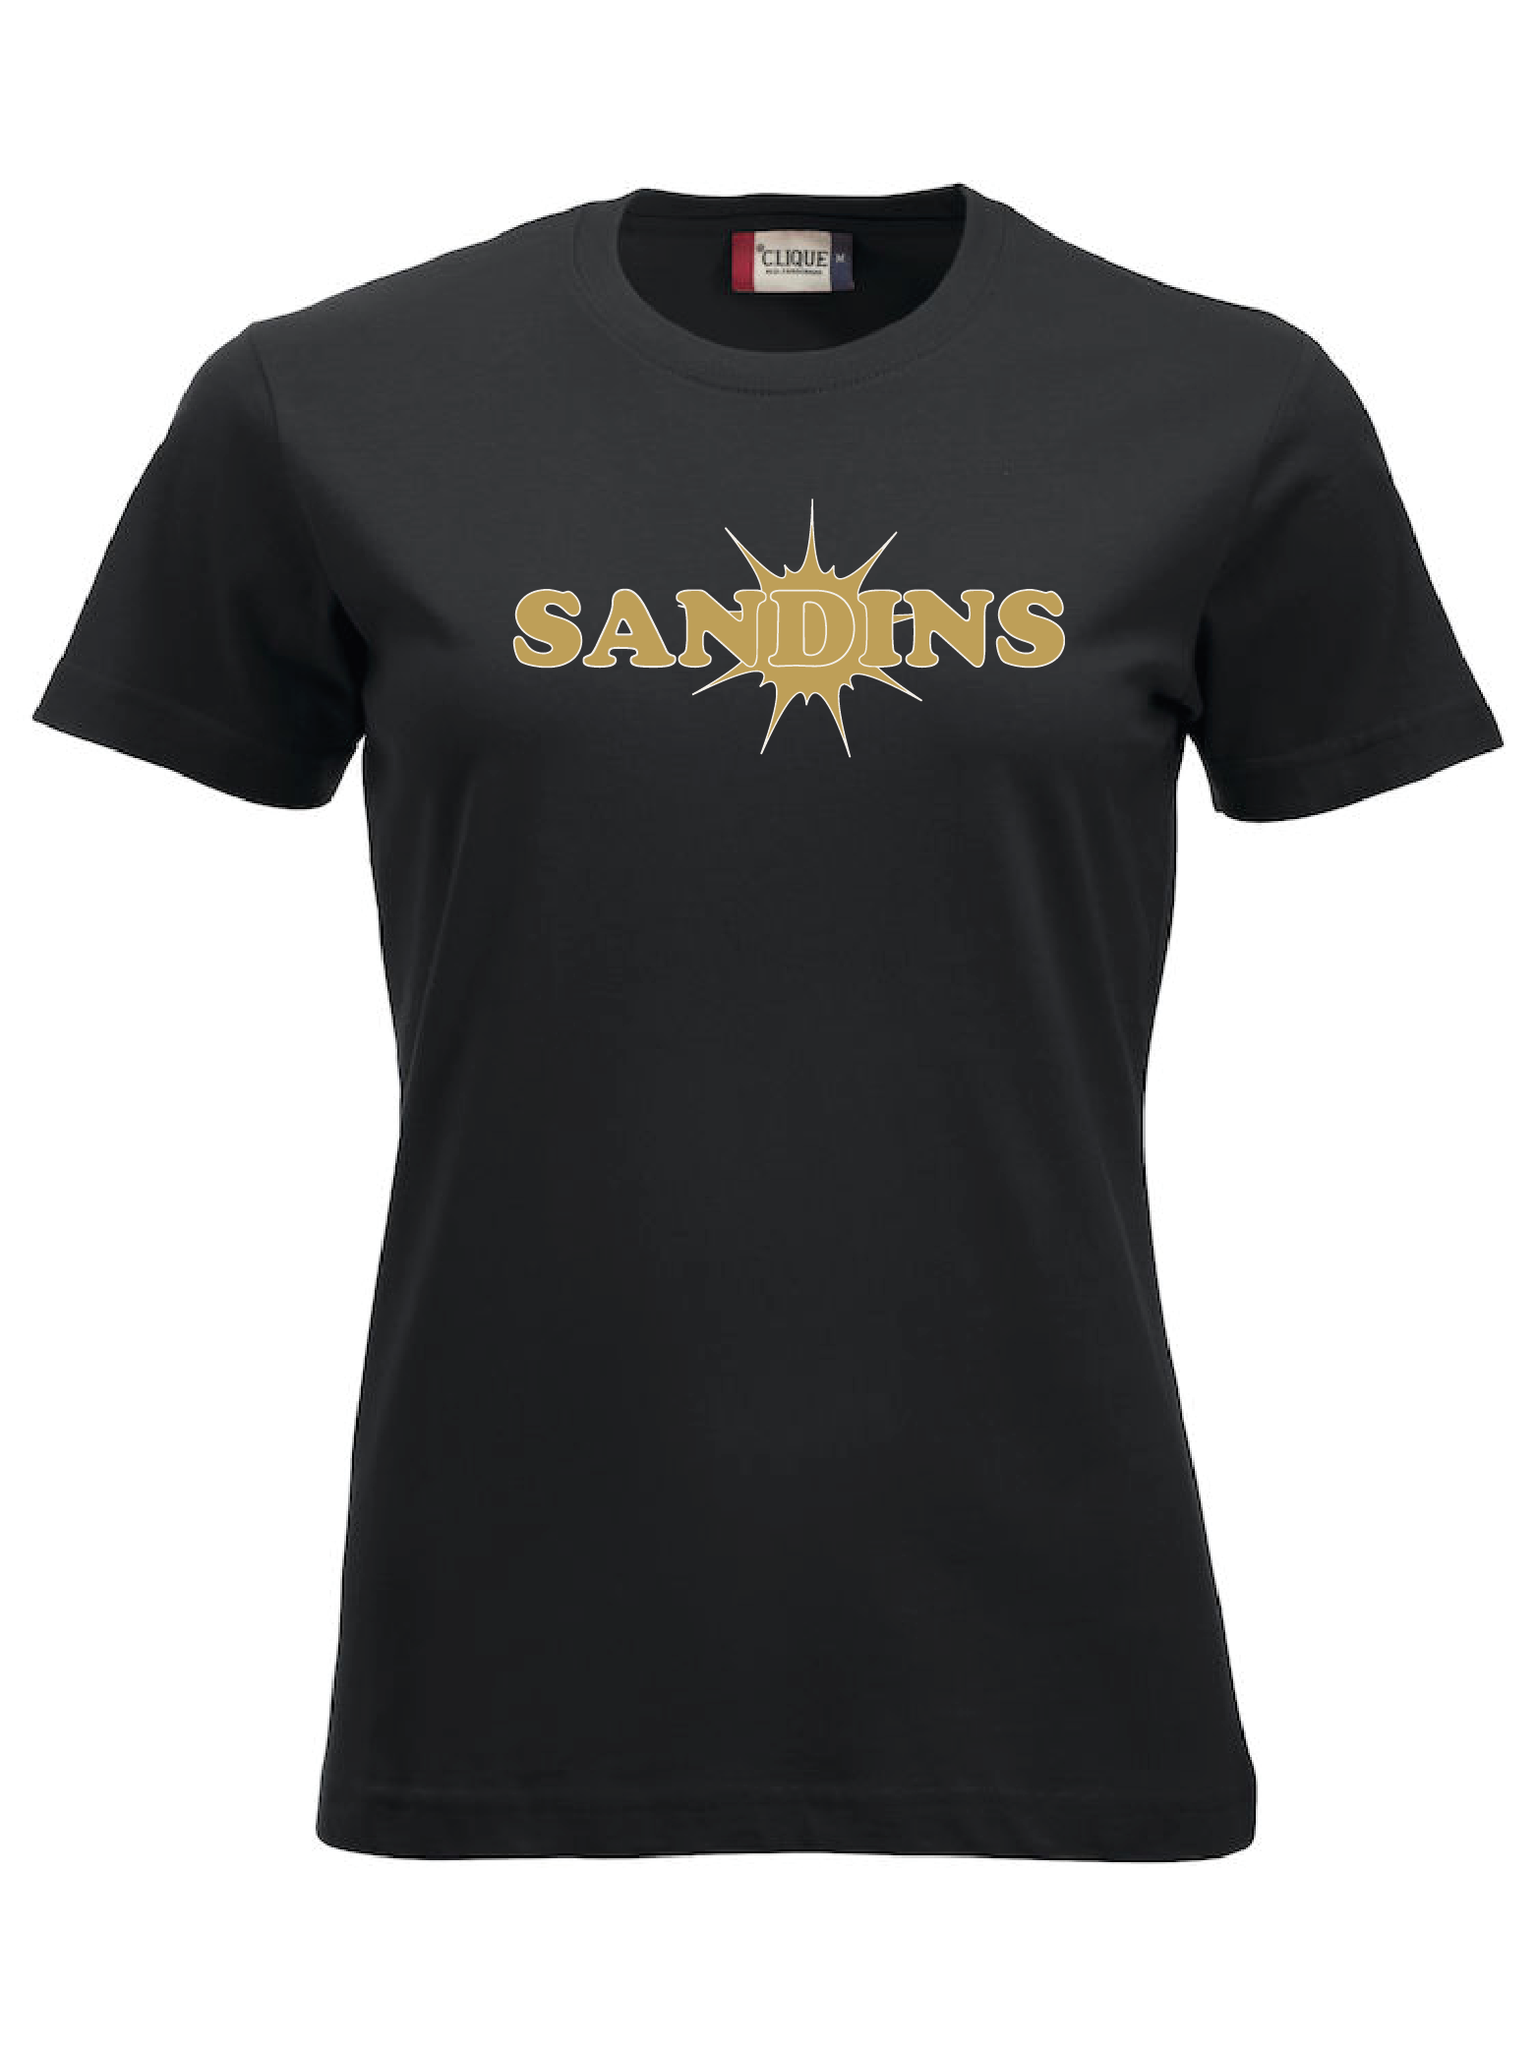 Svart Dam T-shirt "Sandins"